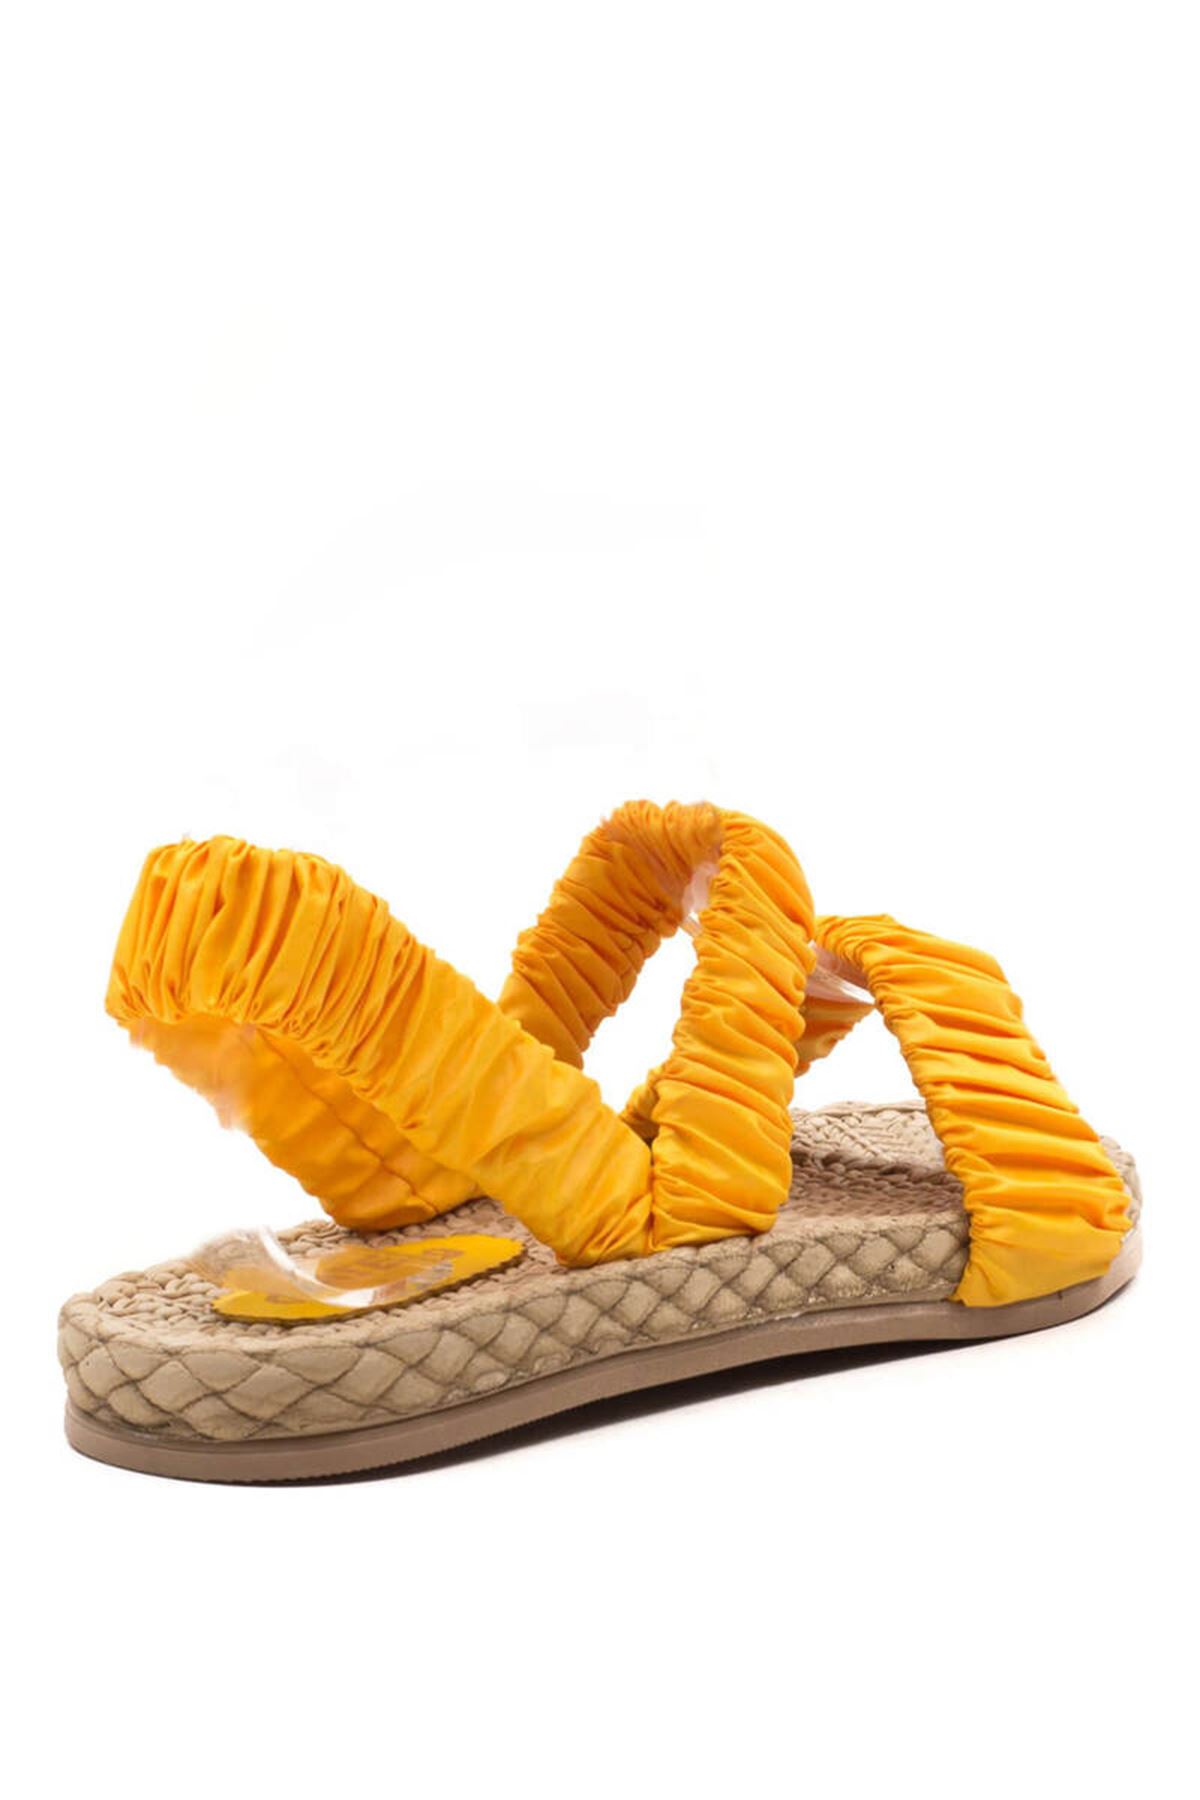 Kadın Hasır Tabanlı Sandalet Beta Gate Shoes-Sarı